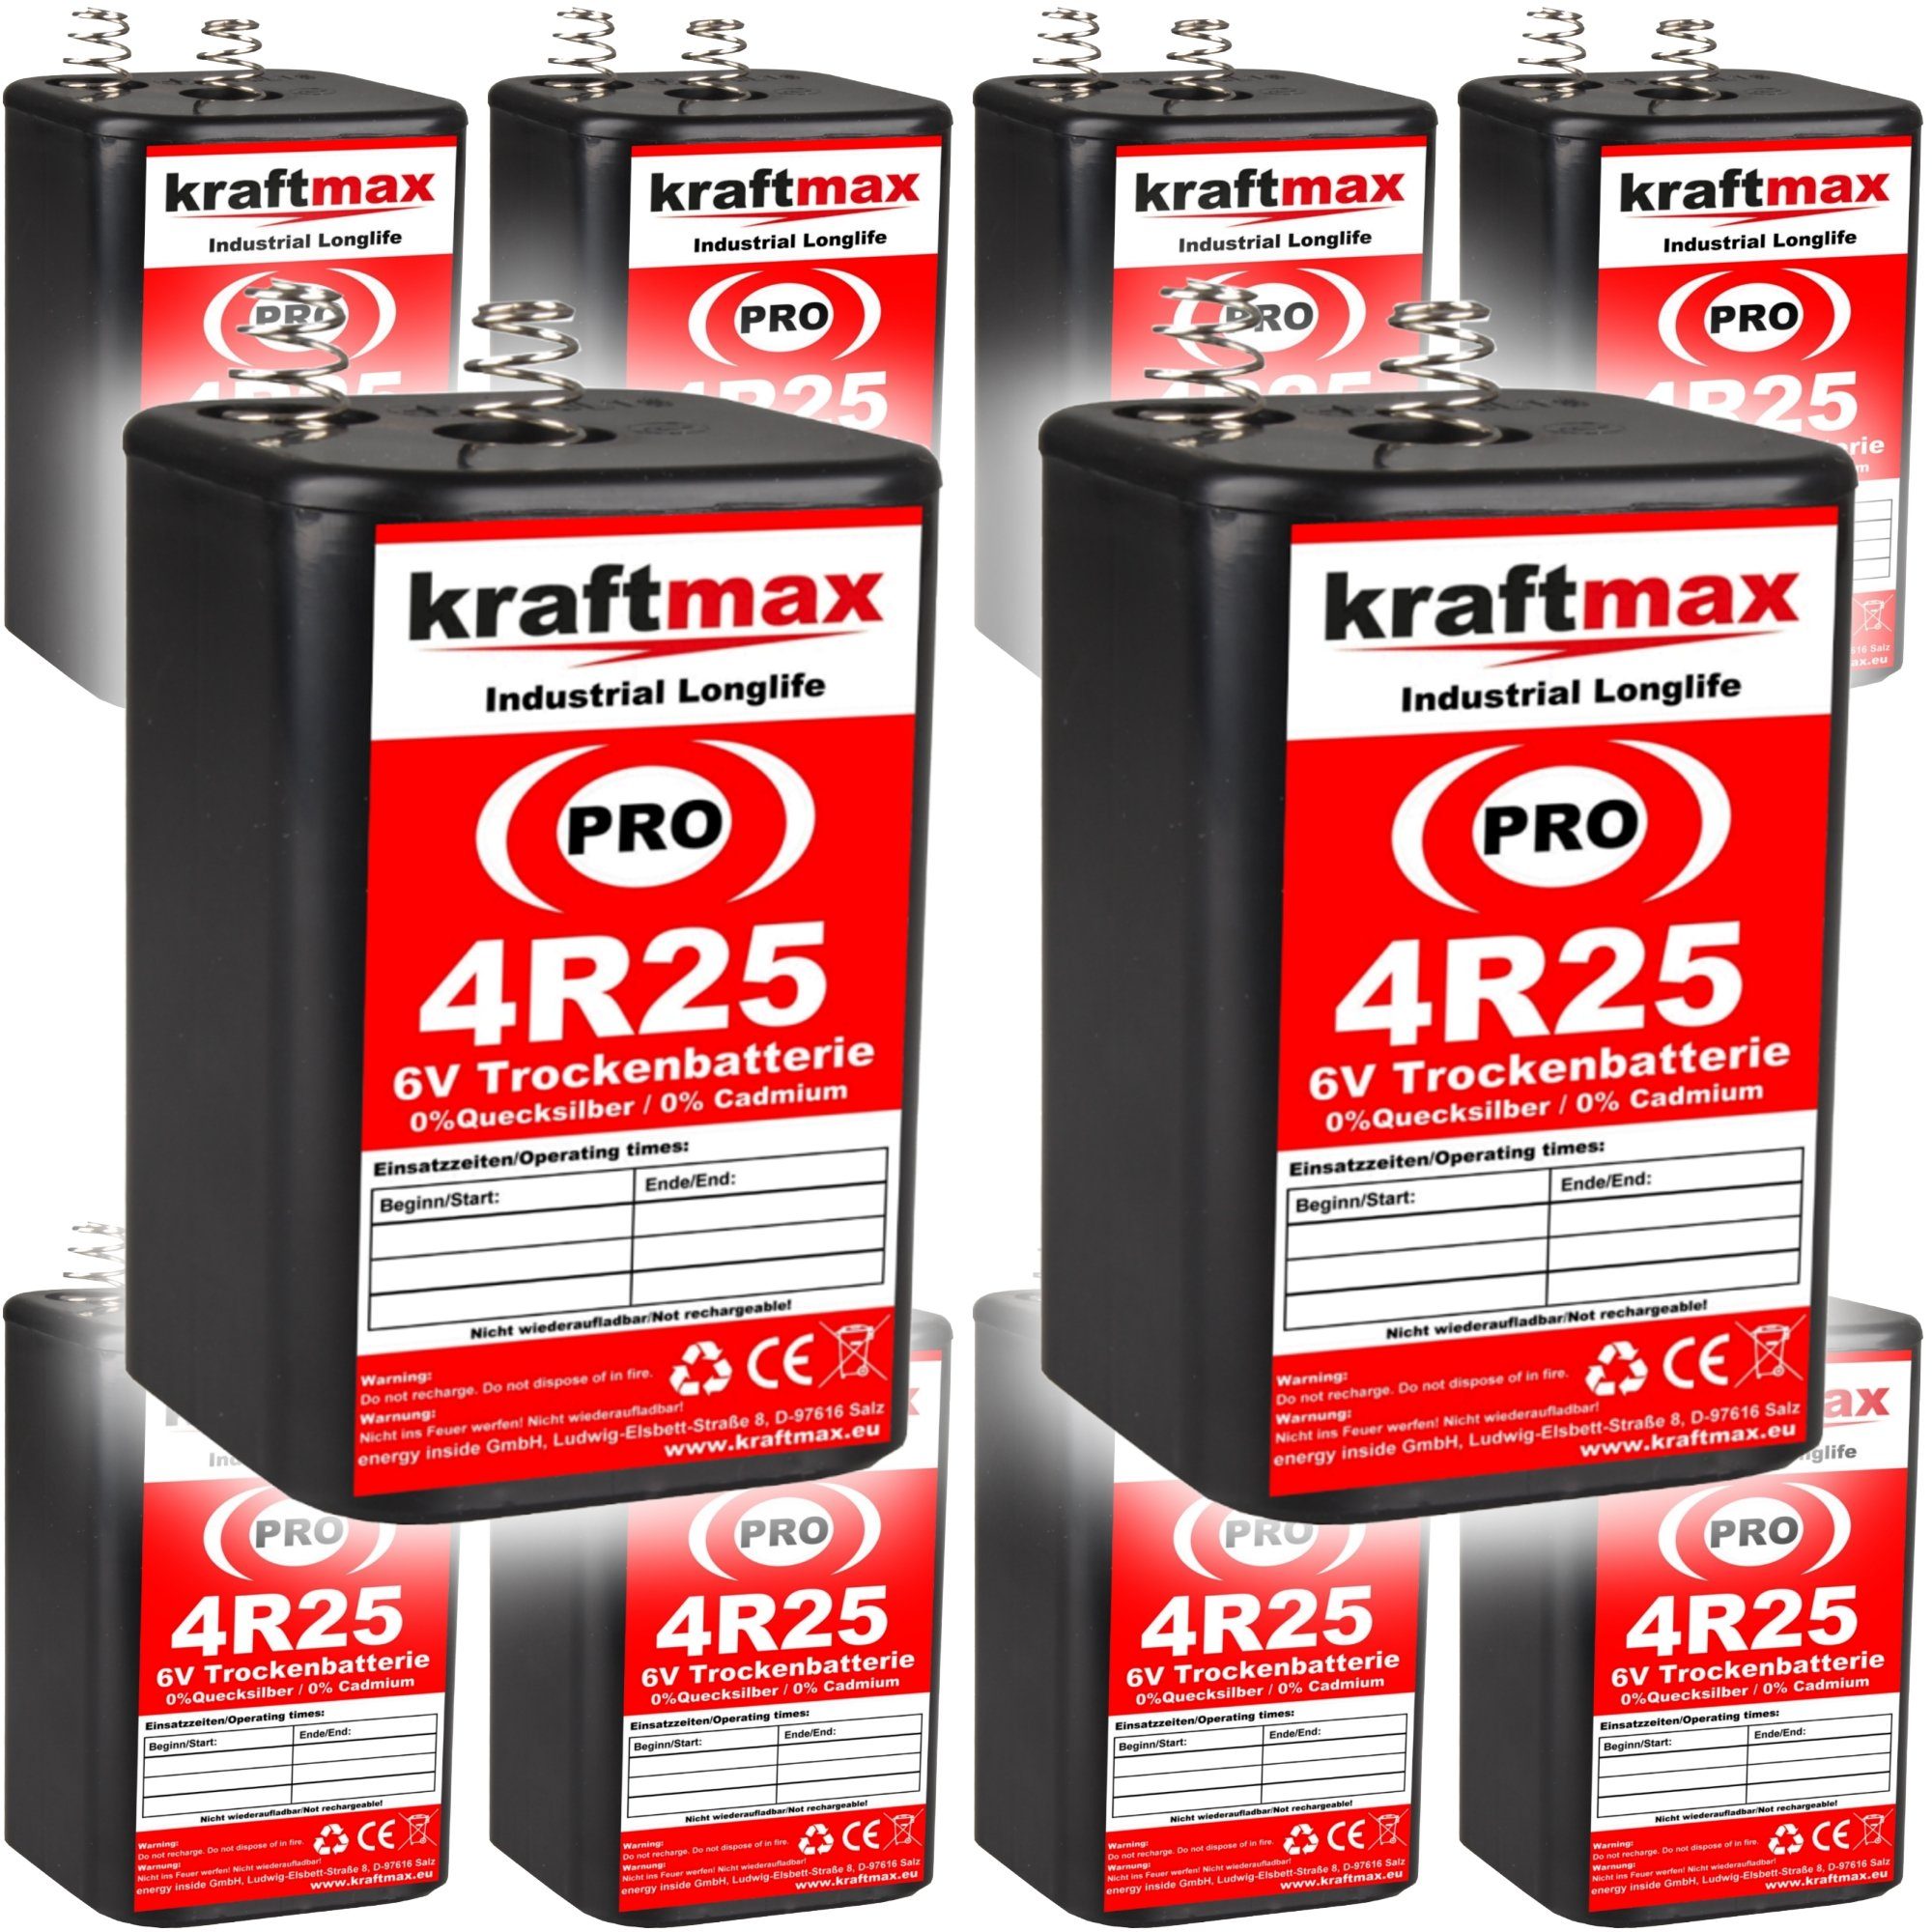 - Longlife Batterie, Pack (1 10er 4R25 Industrial kraftmax Blockbatterie PRO St)